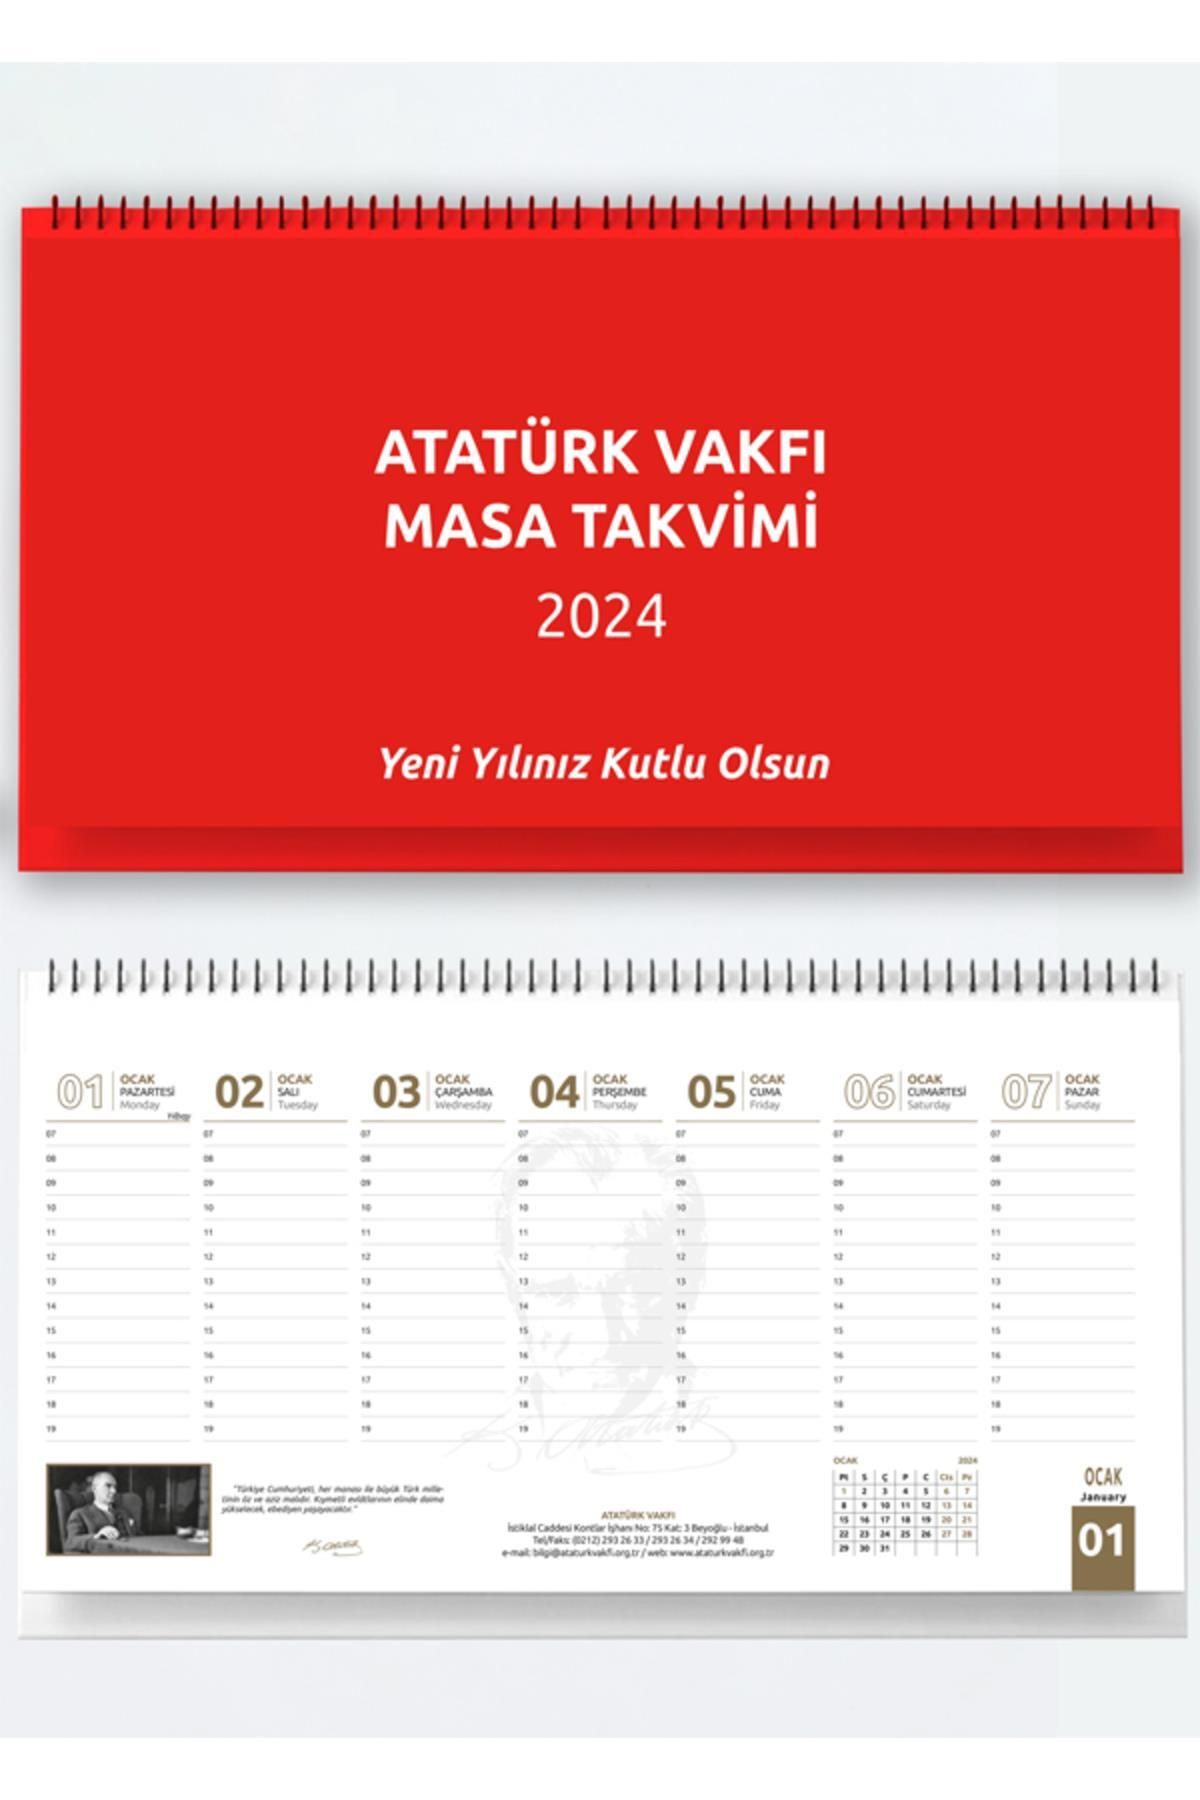 Atatürk Vakfı Yayınevi Atatürk Vakfı 2024 Masa Sümen